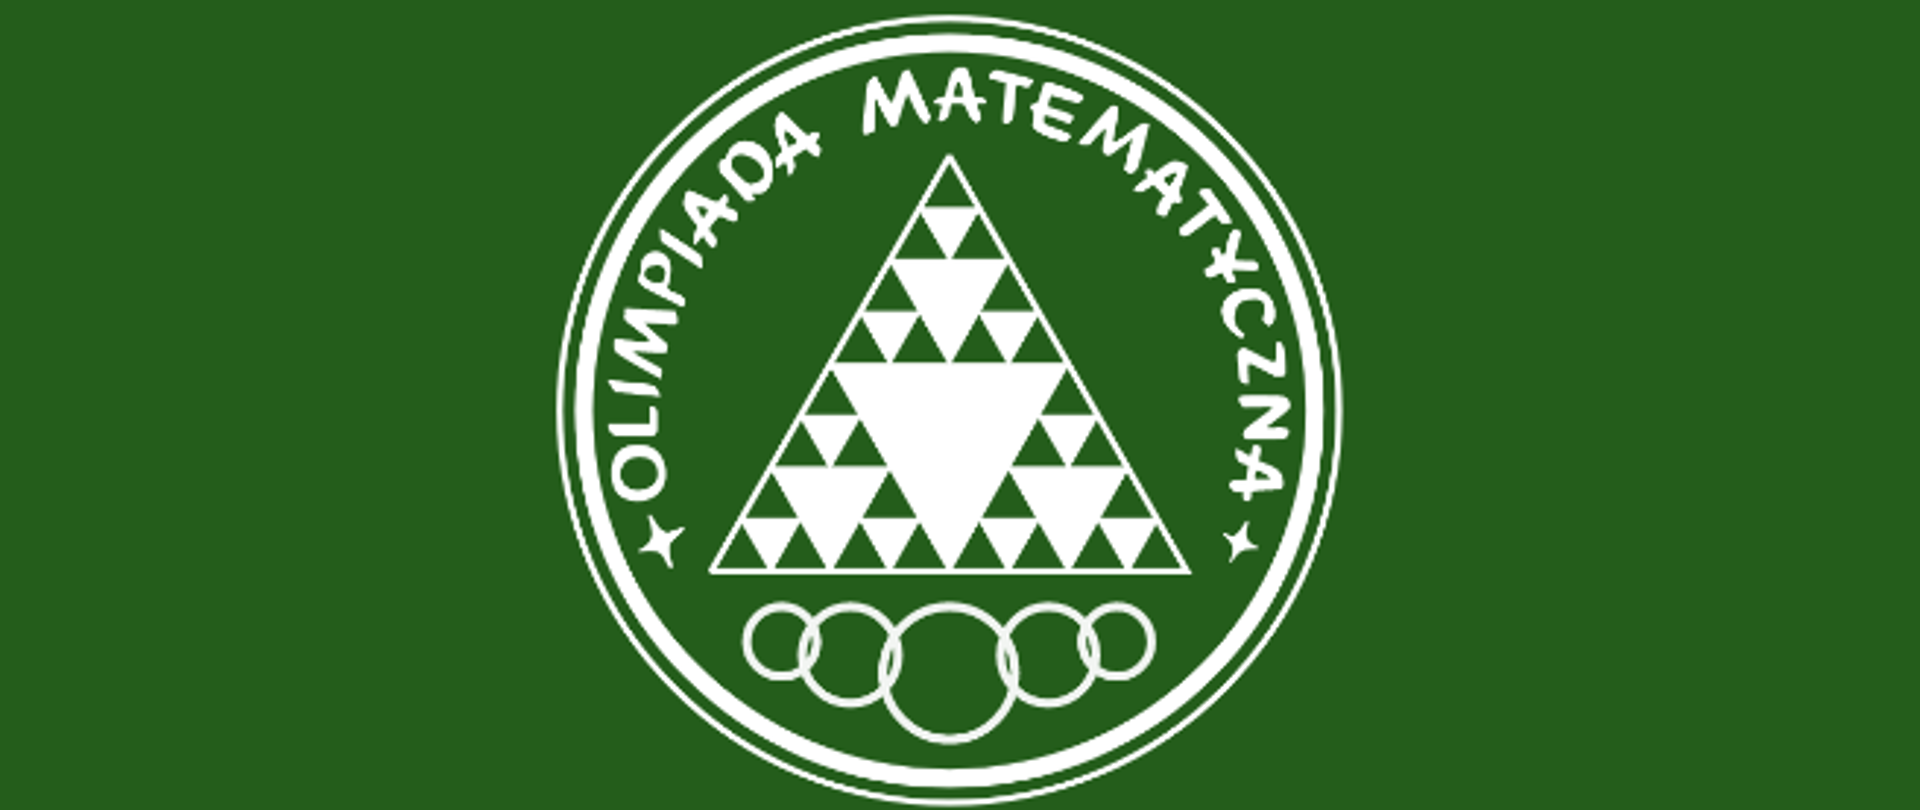 Olimpiada Matematyczna - logo